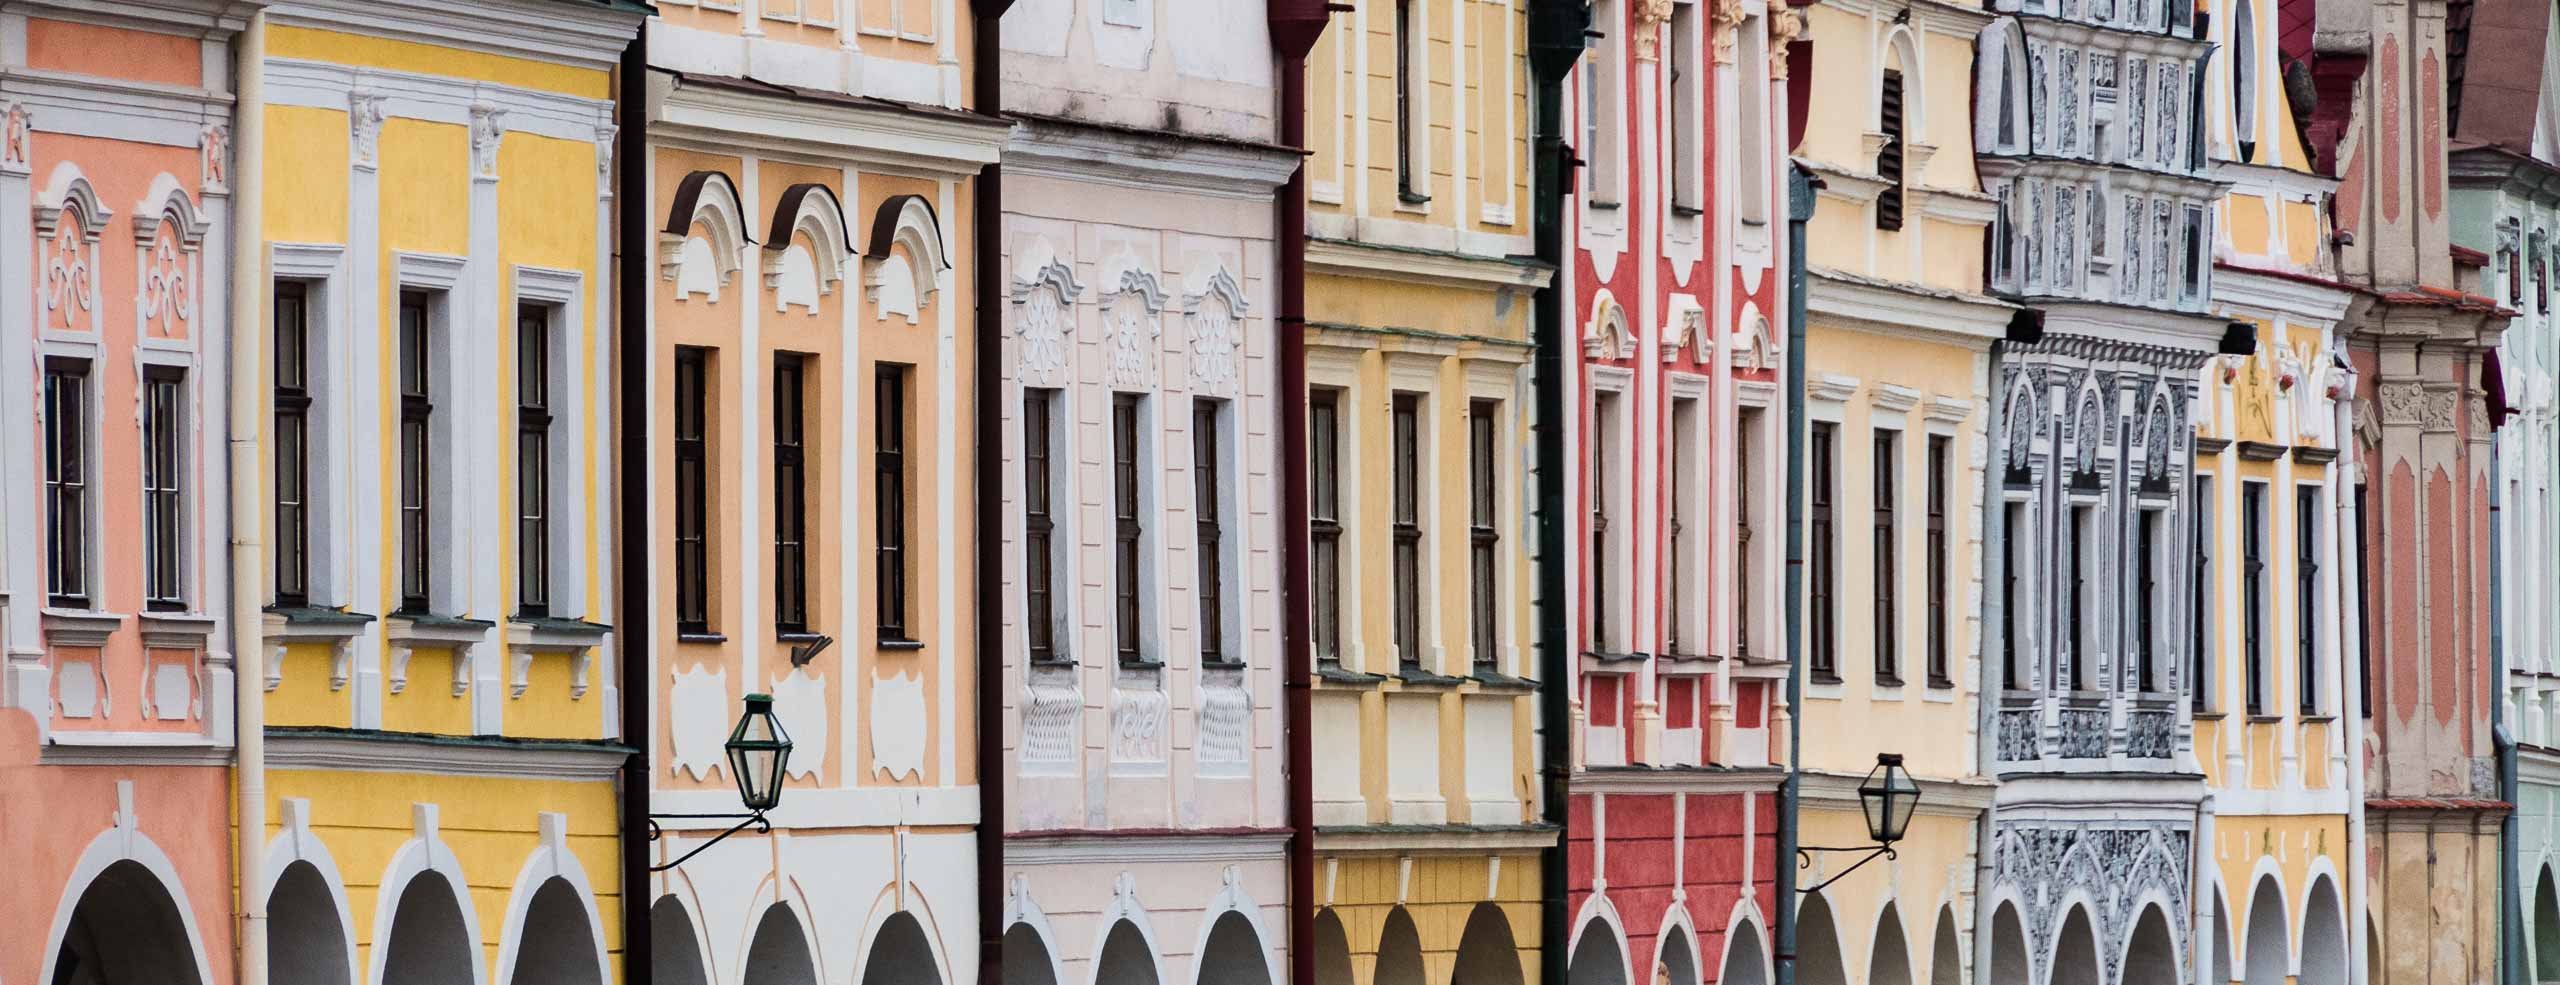 Façades colorées de la Place Zacharie de Hradec à Telč, Bohème du Sud, Tchéquie, Europe Centrale